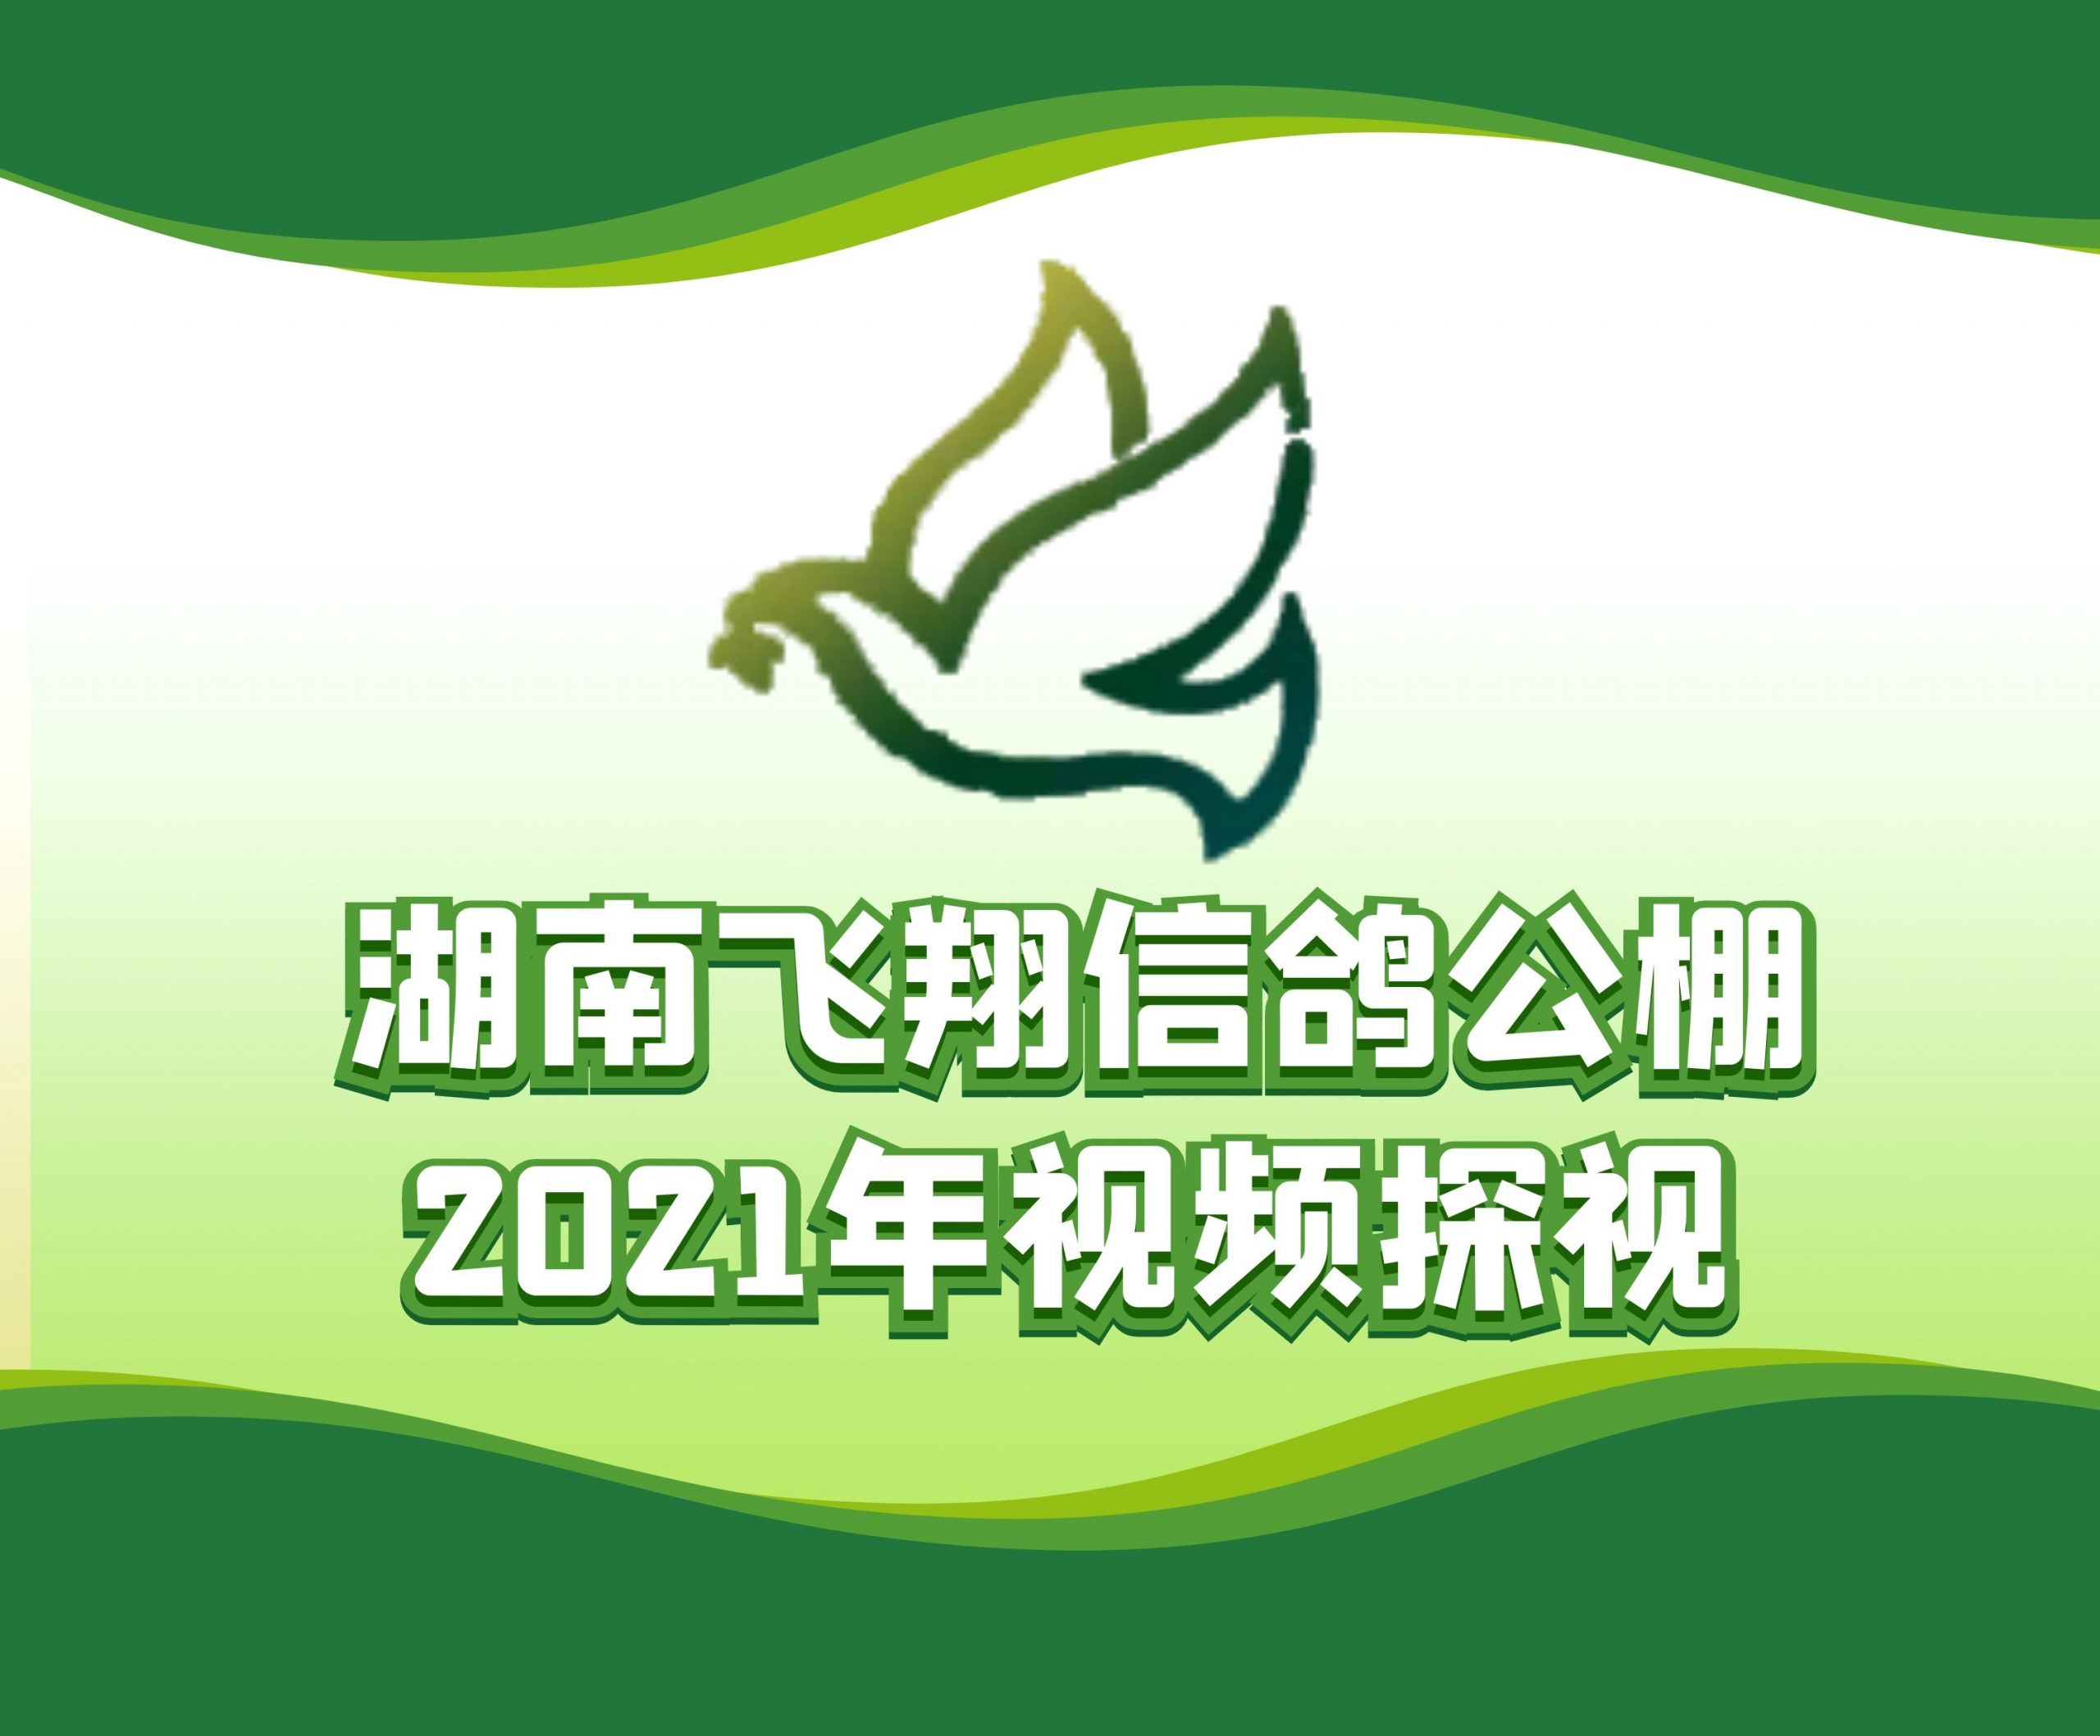 刘原平-2021-17-0028999